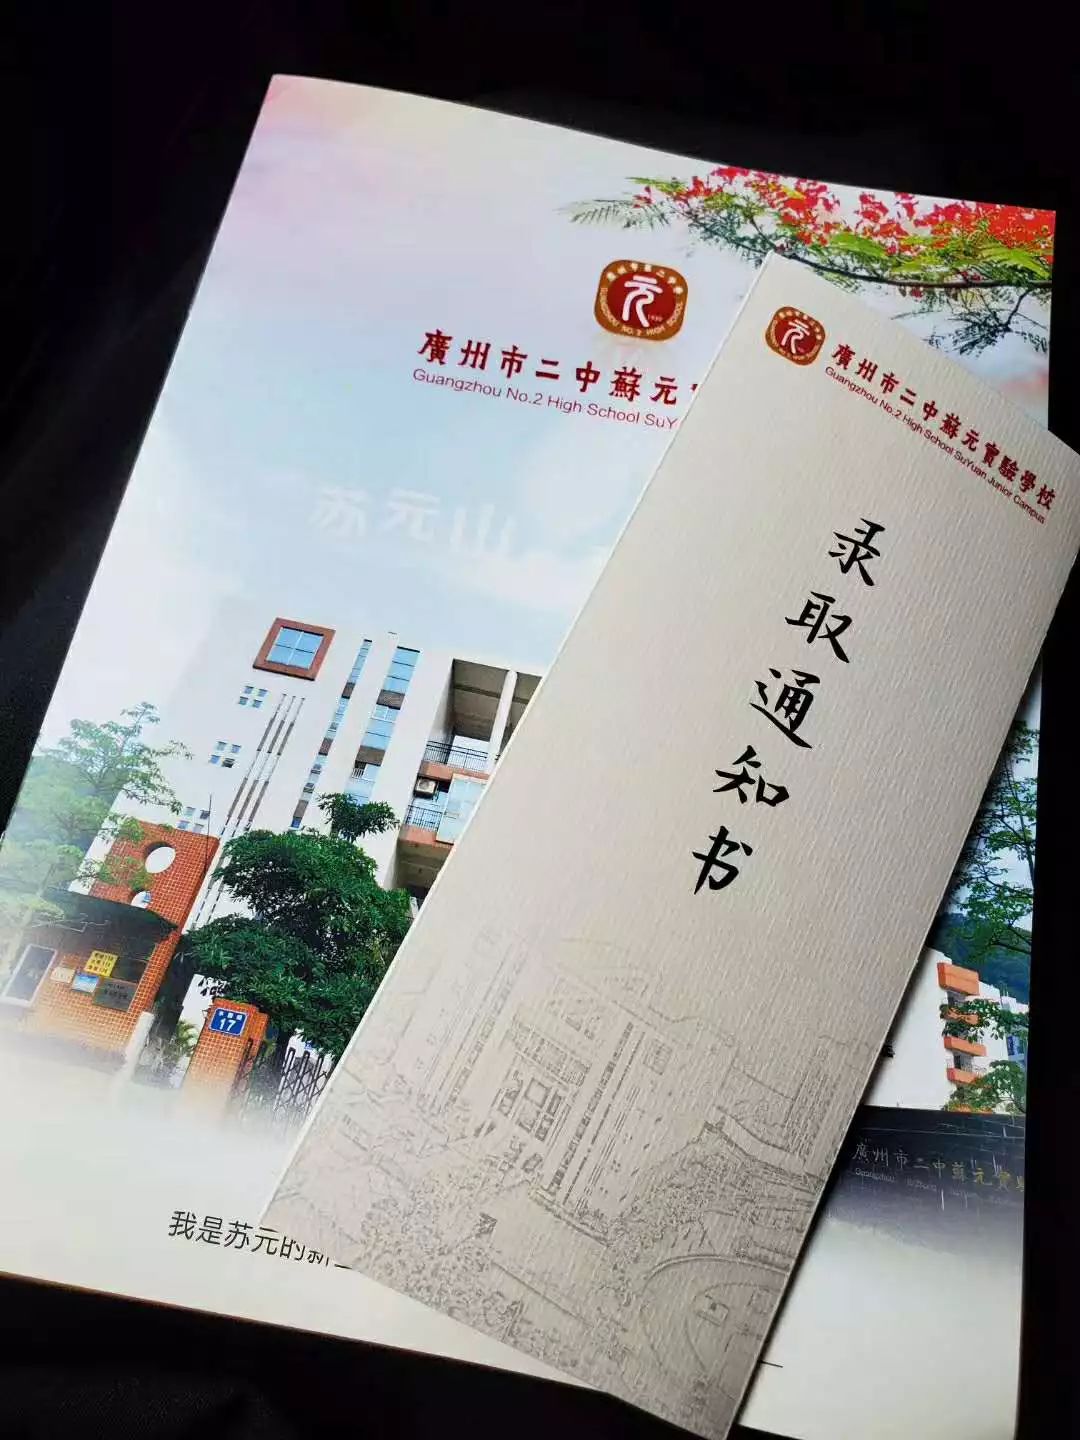 二中苏元二中广州外国语学校华师附中各名校录取通知书,你们拿到哪一